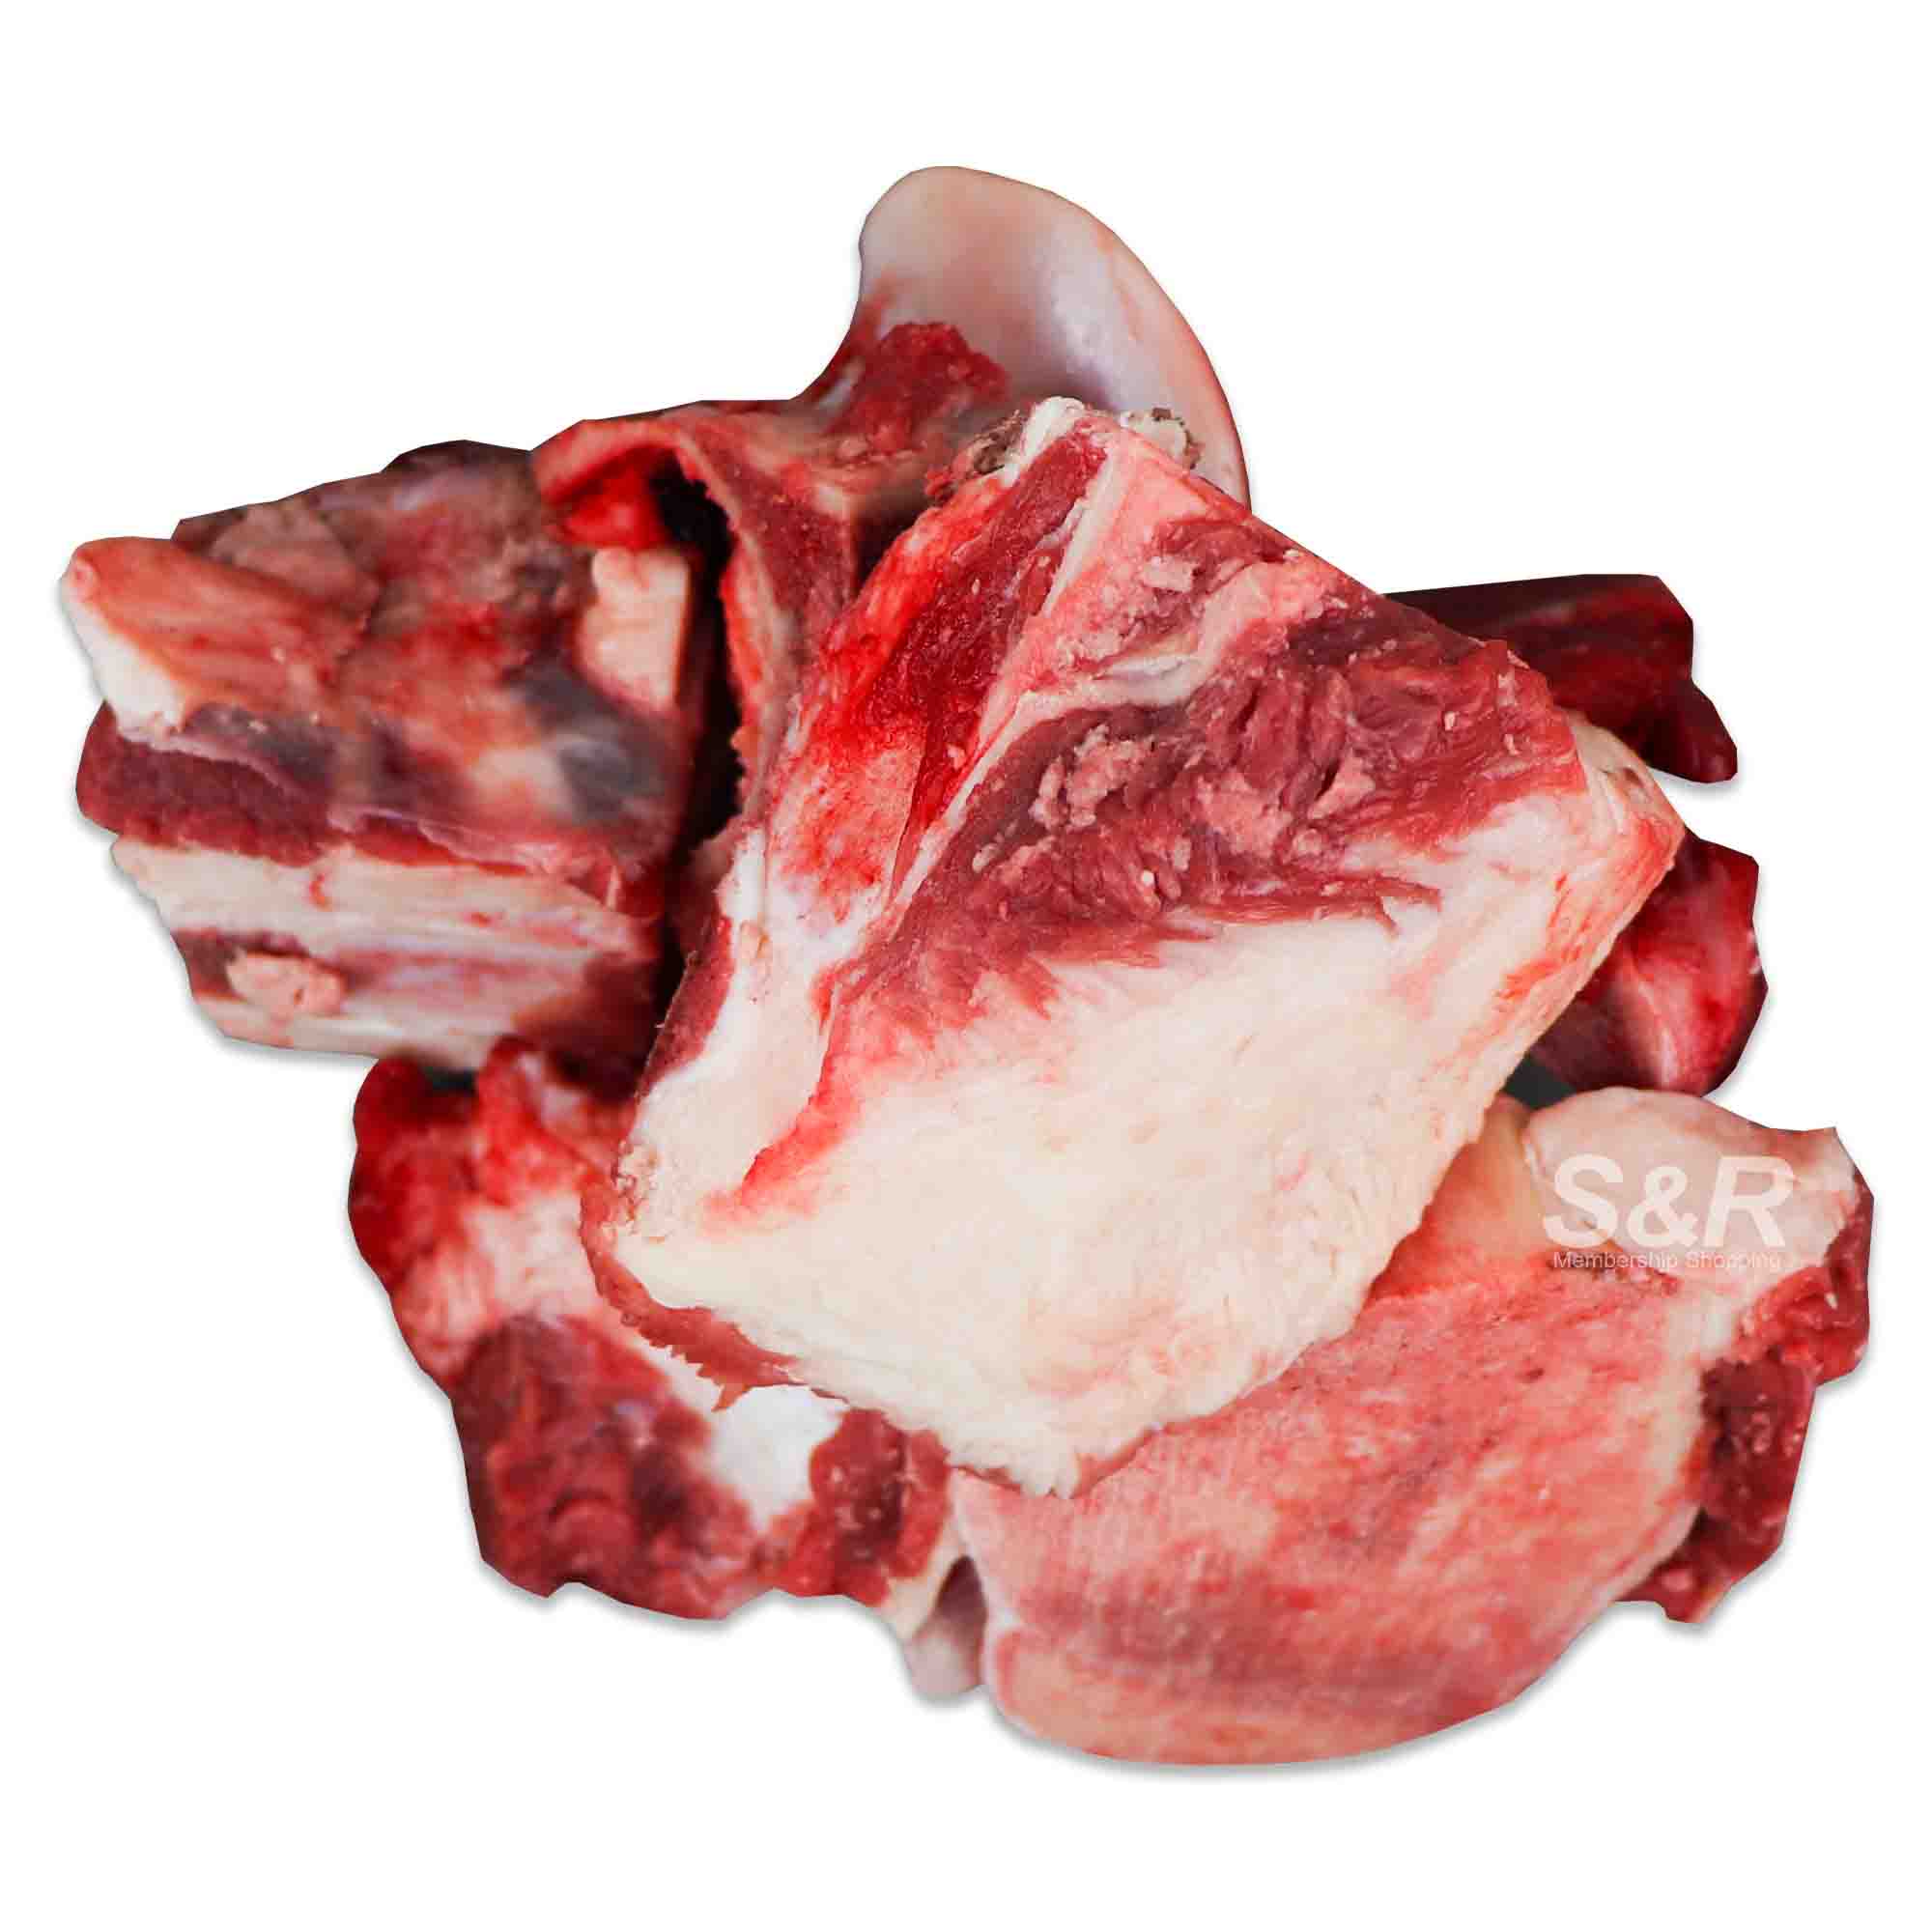 S&R Beef Stock Bones approx. 2kg